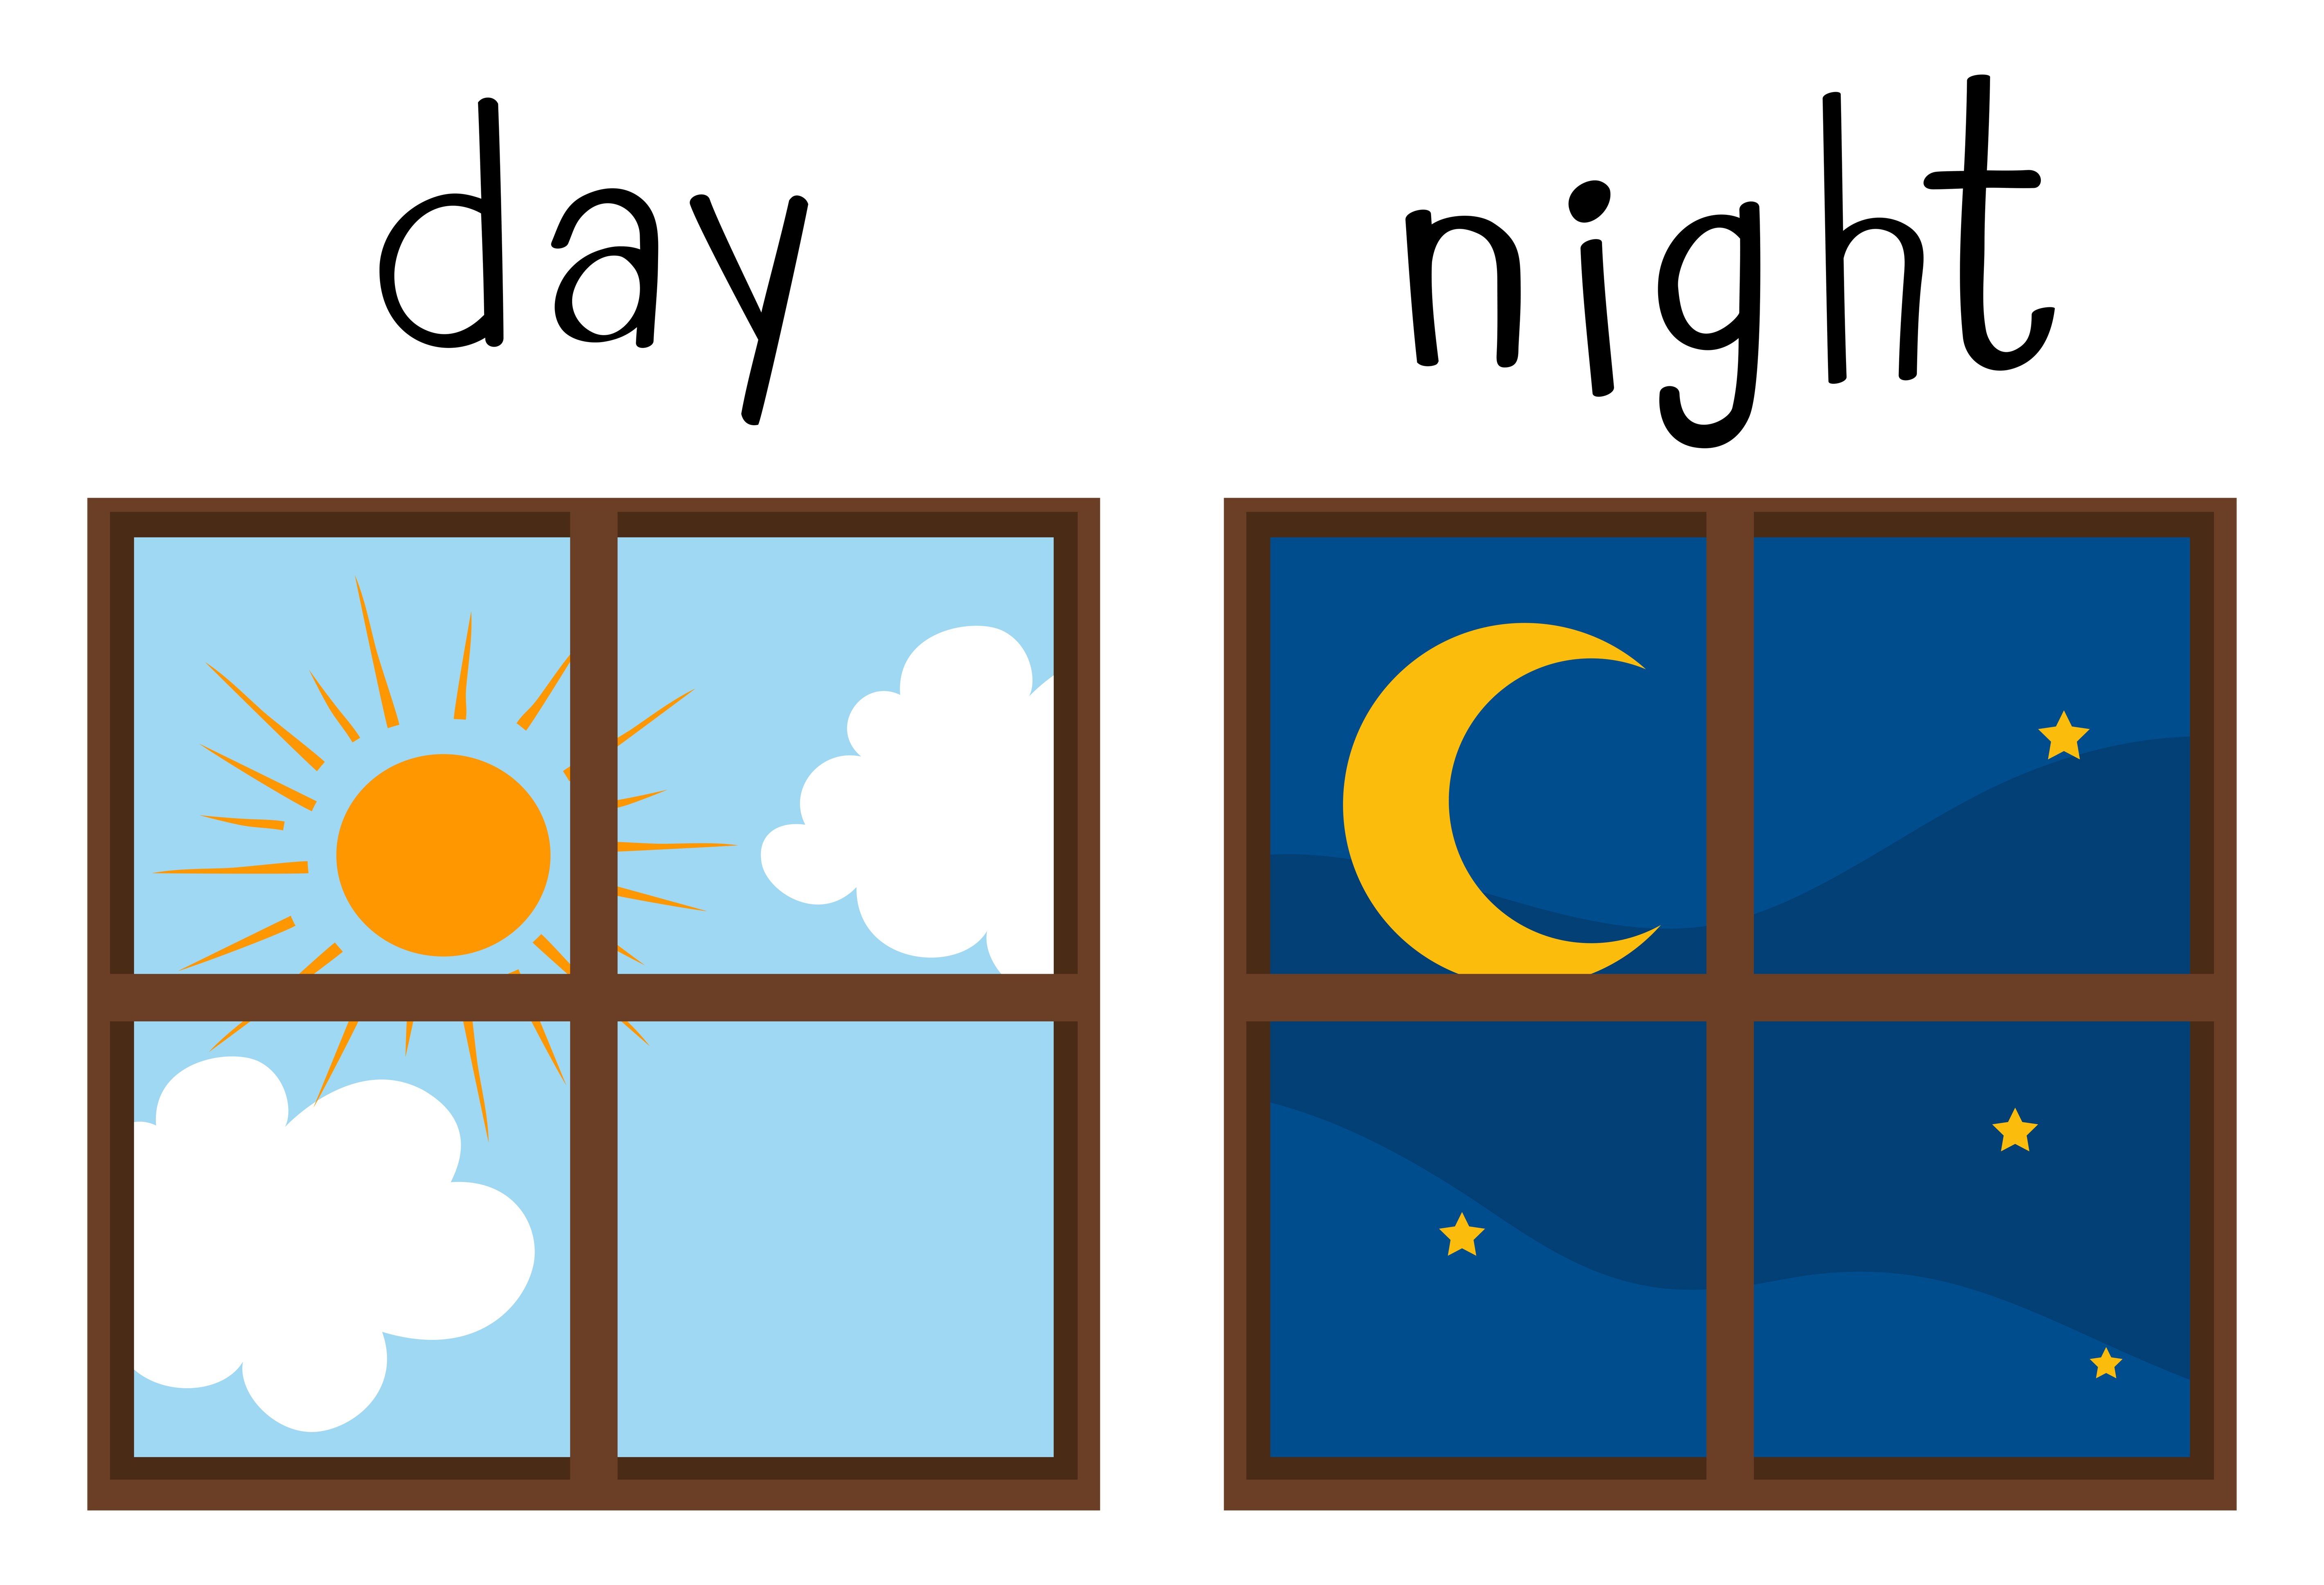 Day night kid. День и ночь. Утро, день, вечер, ночь. День и ночь иллюстрация. Карточки день ночь для детей.